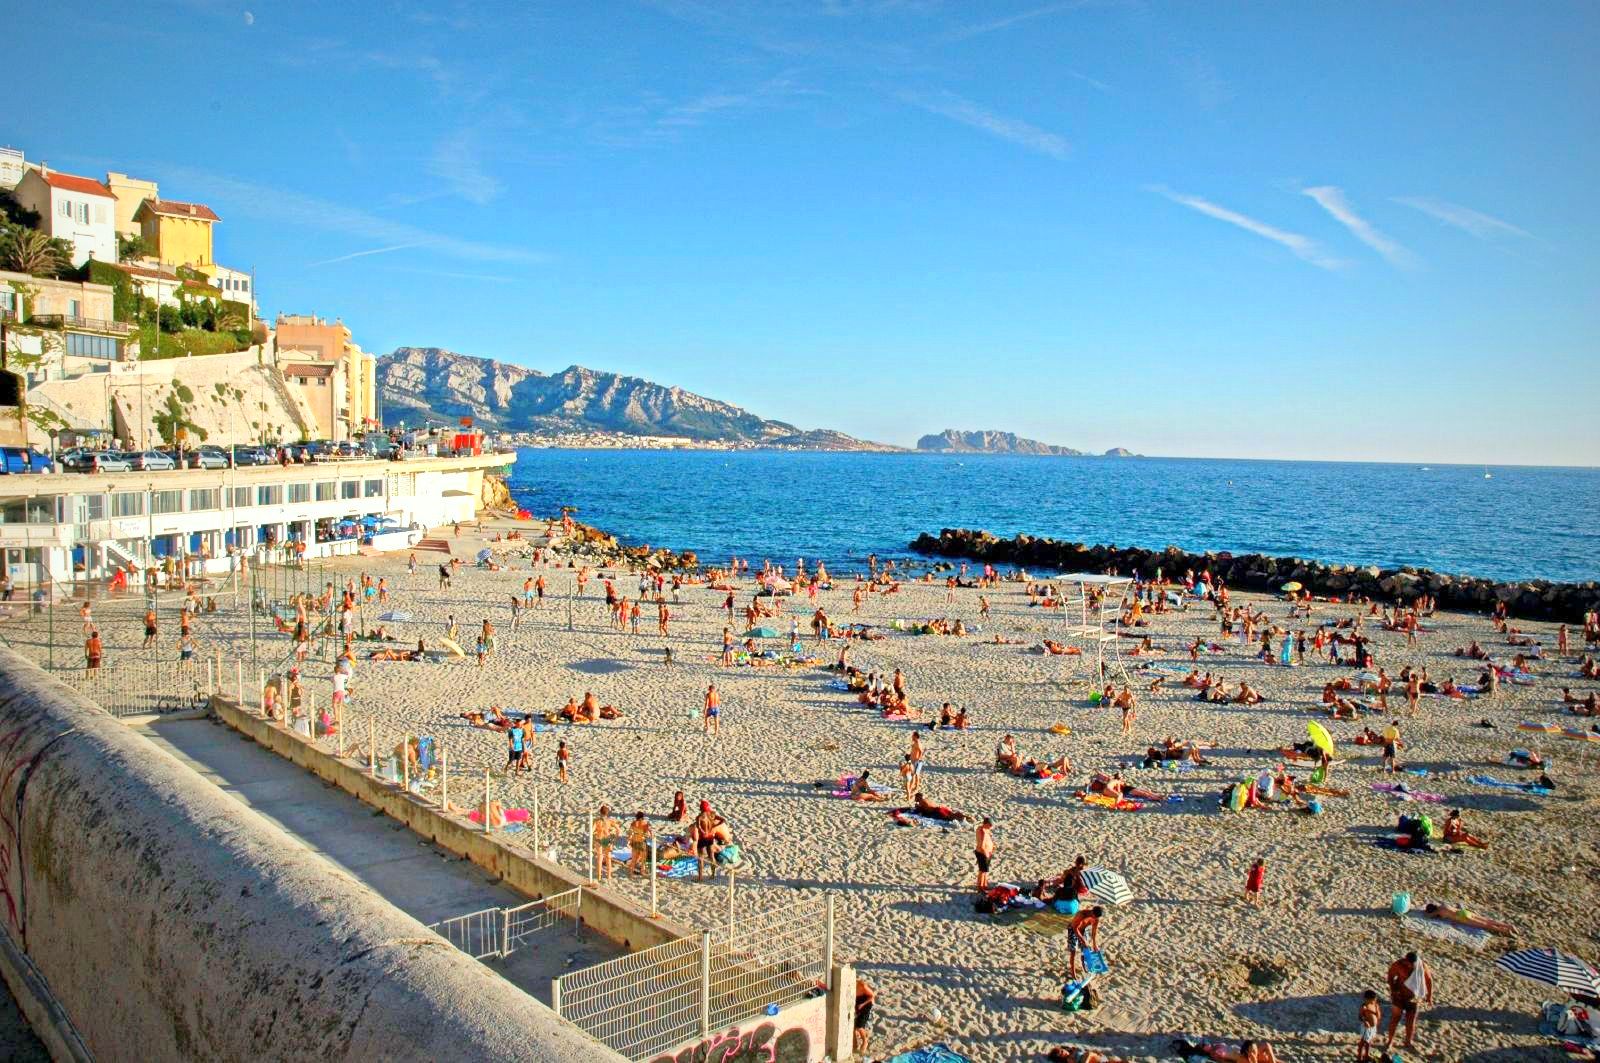 , Non fumeur : La cigarette interdite sur 4 plages de Marseille cet été, Made in Marseille